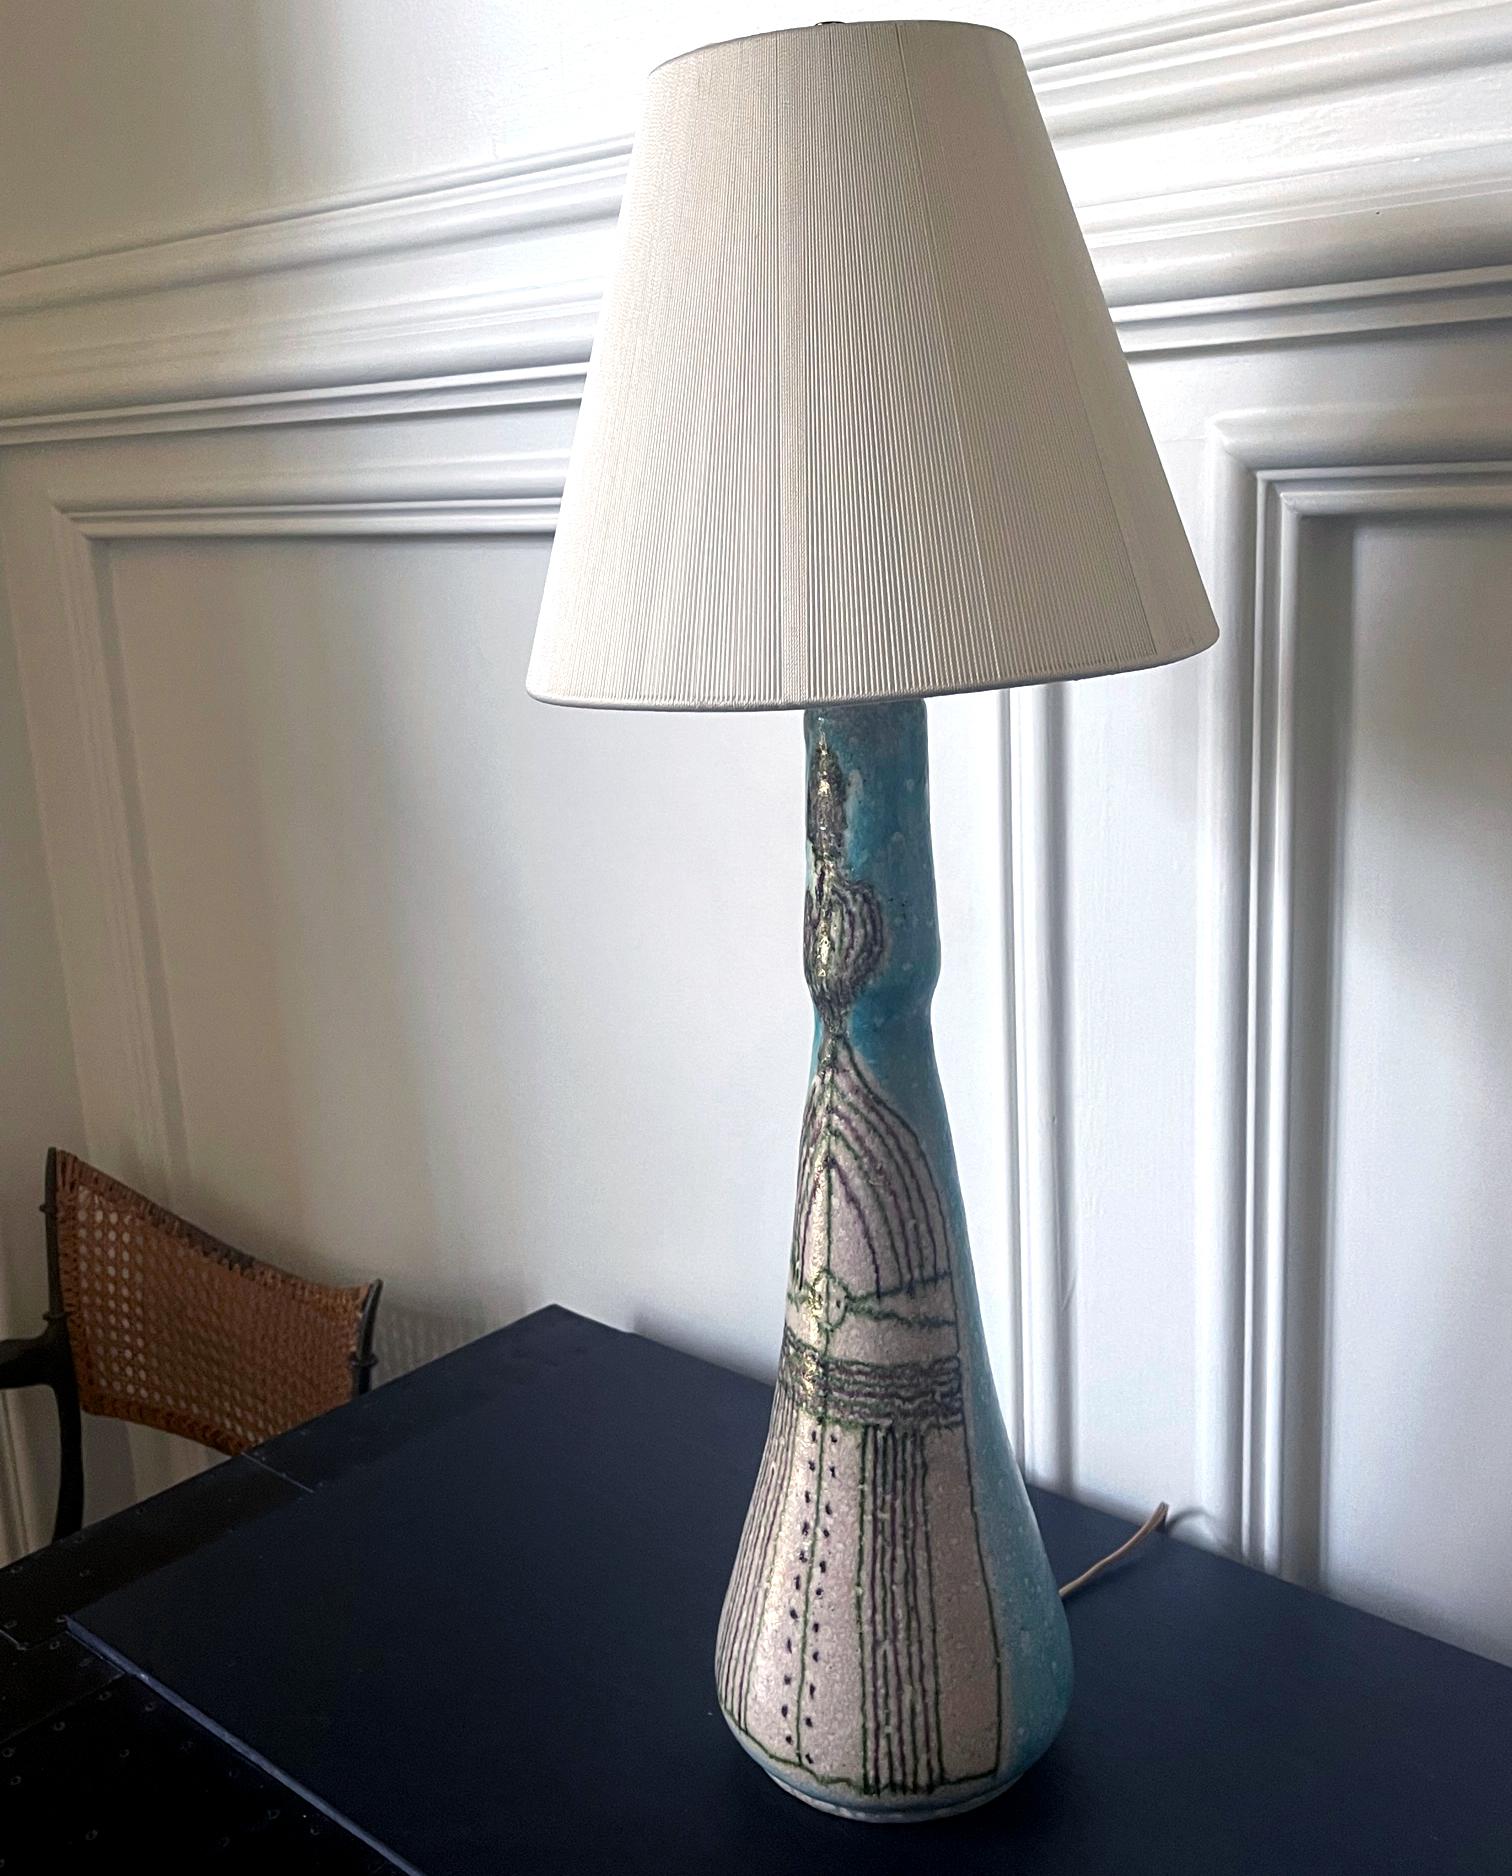 Eine hohe italienische Keramik-Tischlampe, entworfen und hergestellt von Guido Gambone (1909-1969), einem italienischen Keramikkünstler aus Florenz, um 1950. Der Lampenfuß aus Steinzeug ist mit der für den Künstler charakteristischen 